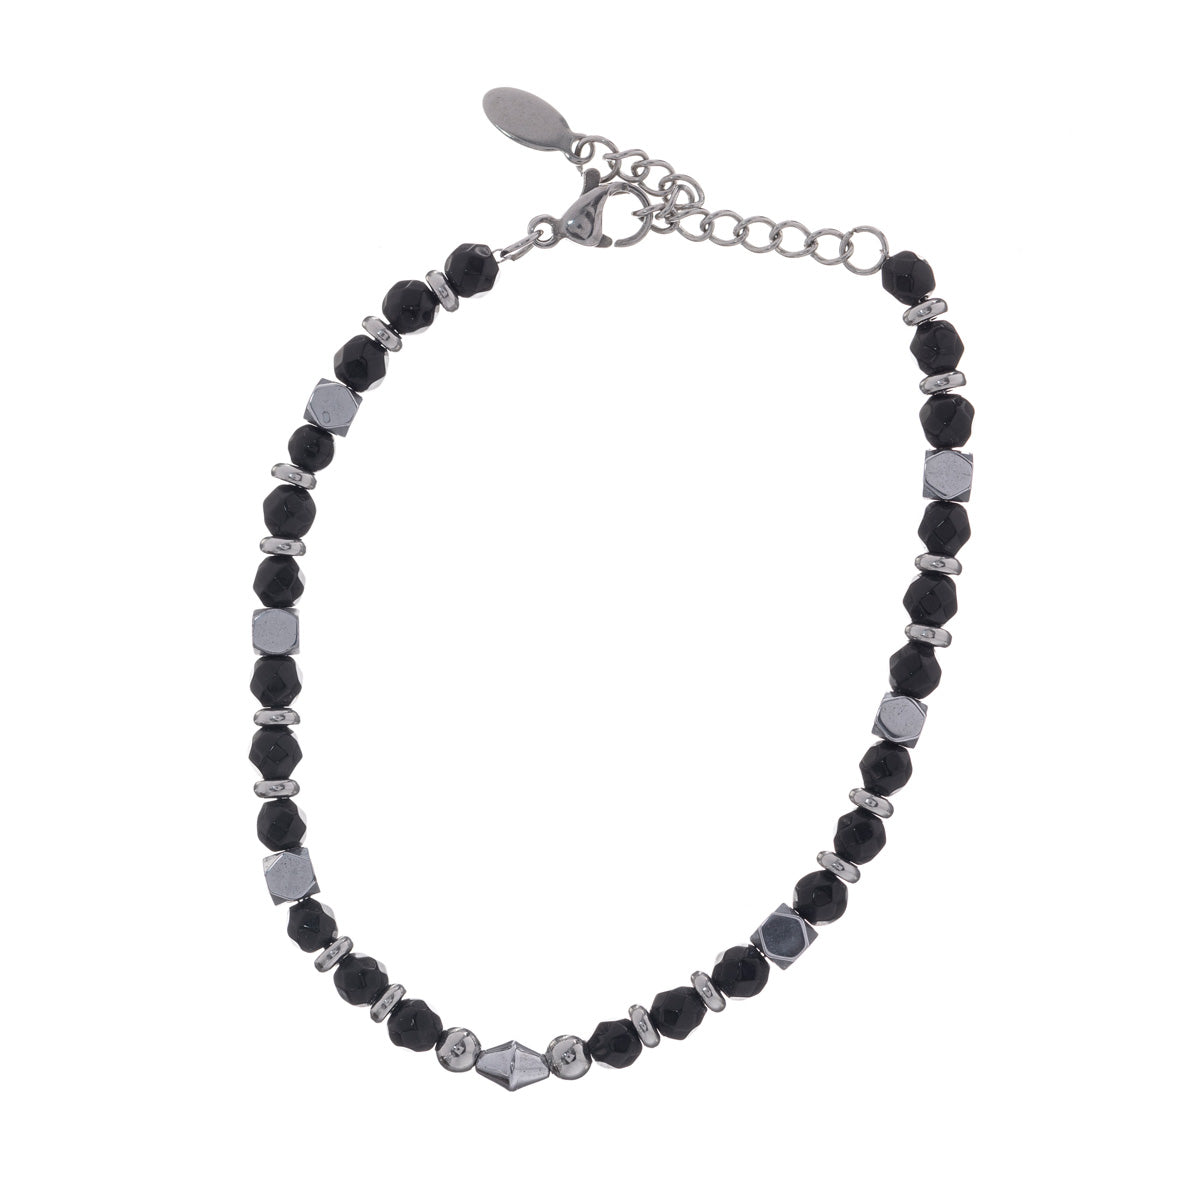 Stone beads steel bracelet